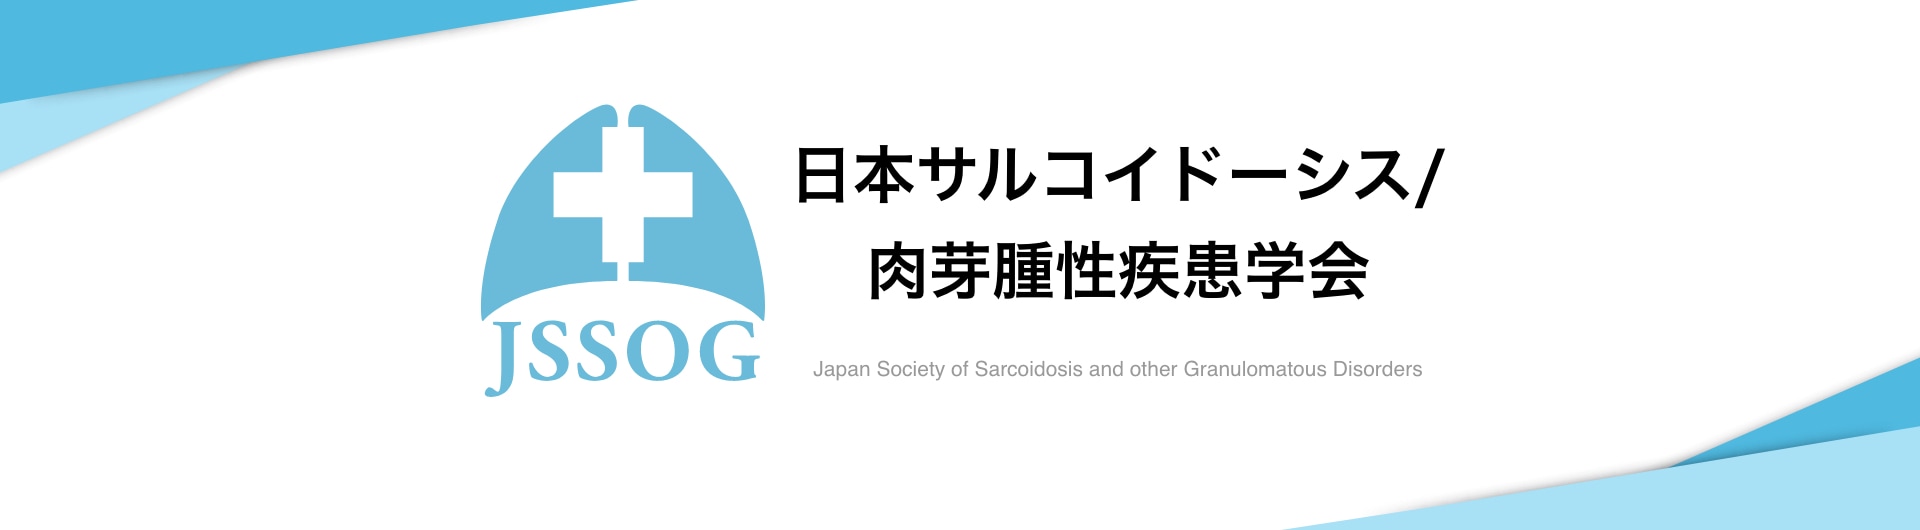 日本サルコイドーシス/肉芽腫性疾患学会